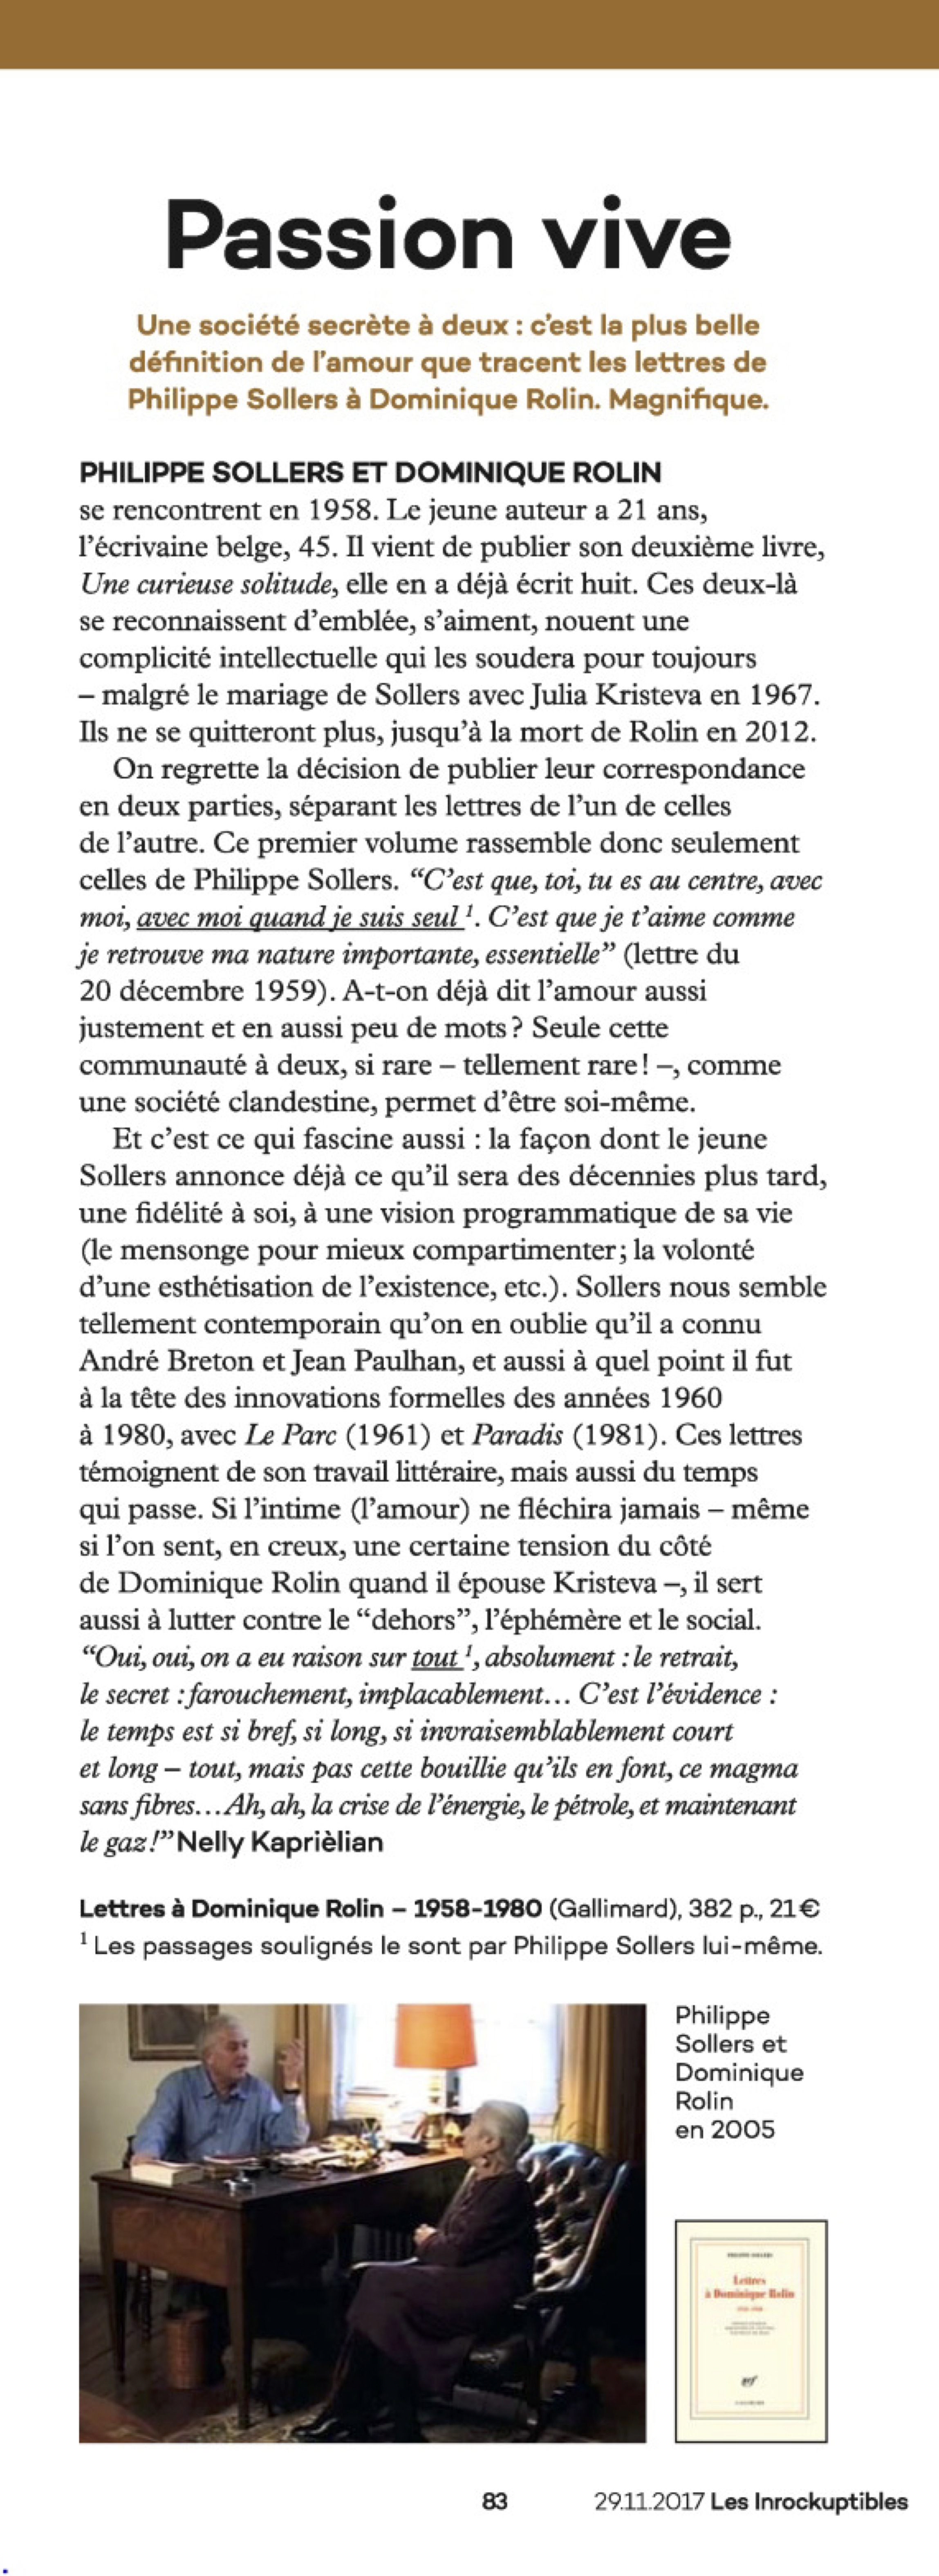 “Lettres à Dominique Rolin” de Philippe Sollers : passion vive